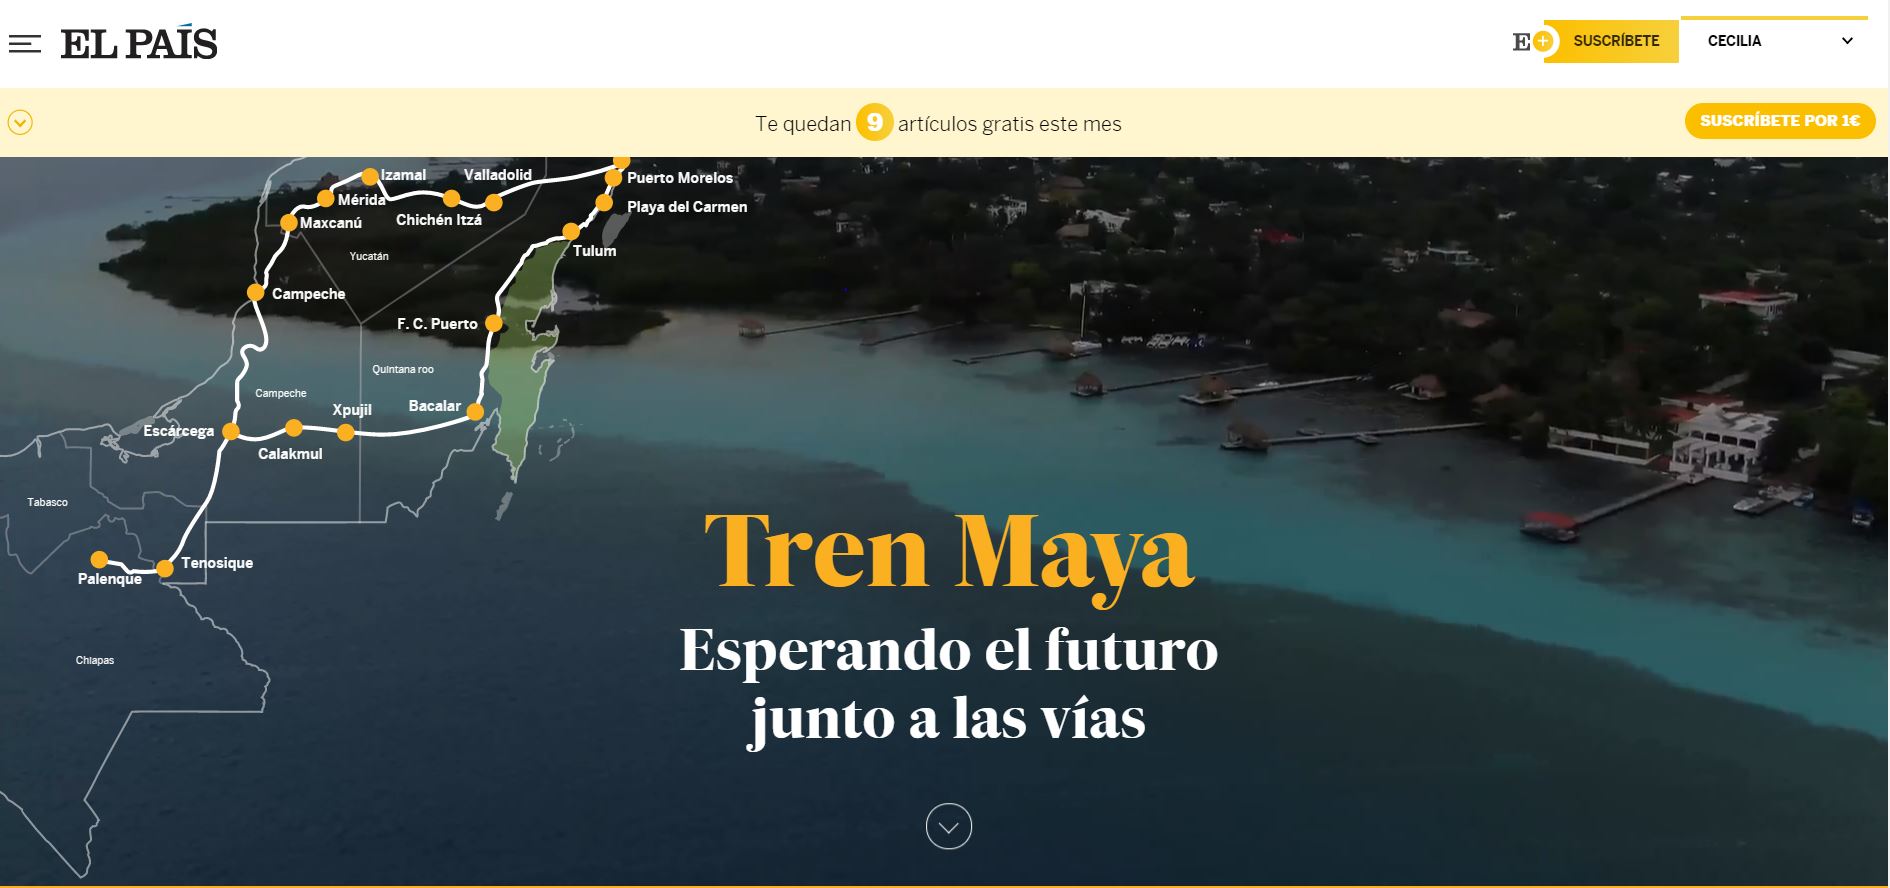 Tren Maya Esperando el futuro junto a las vías Consejo Civil